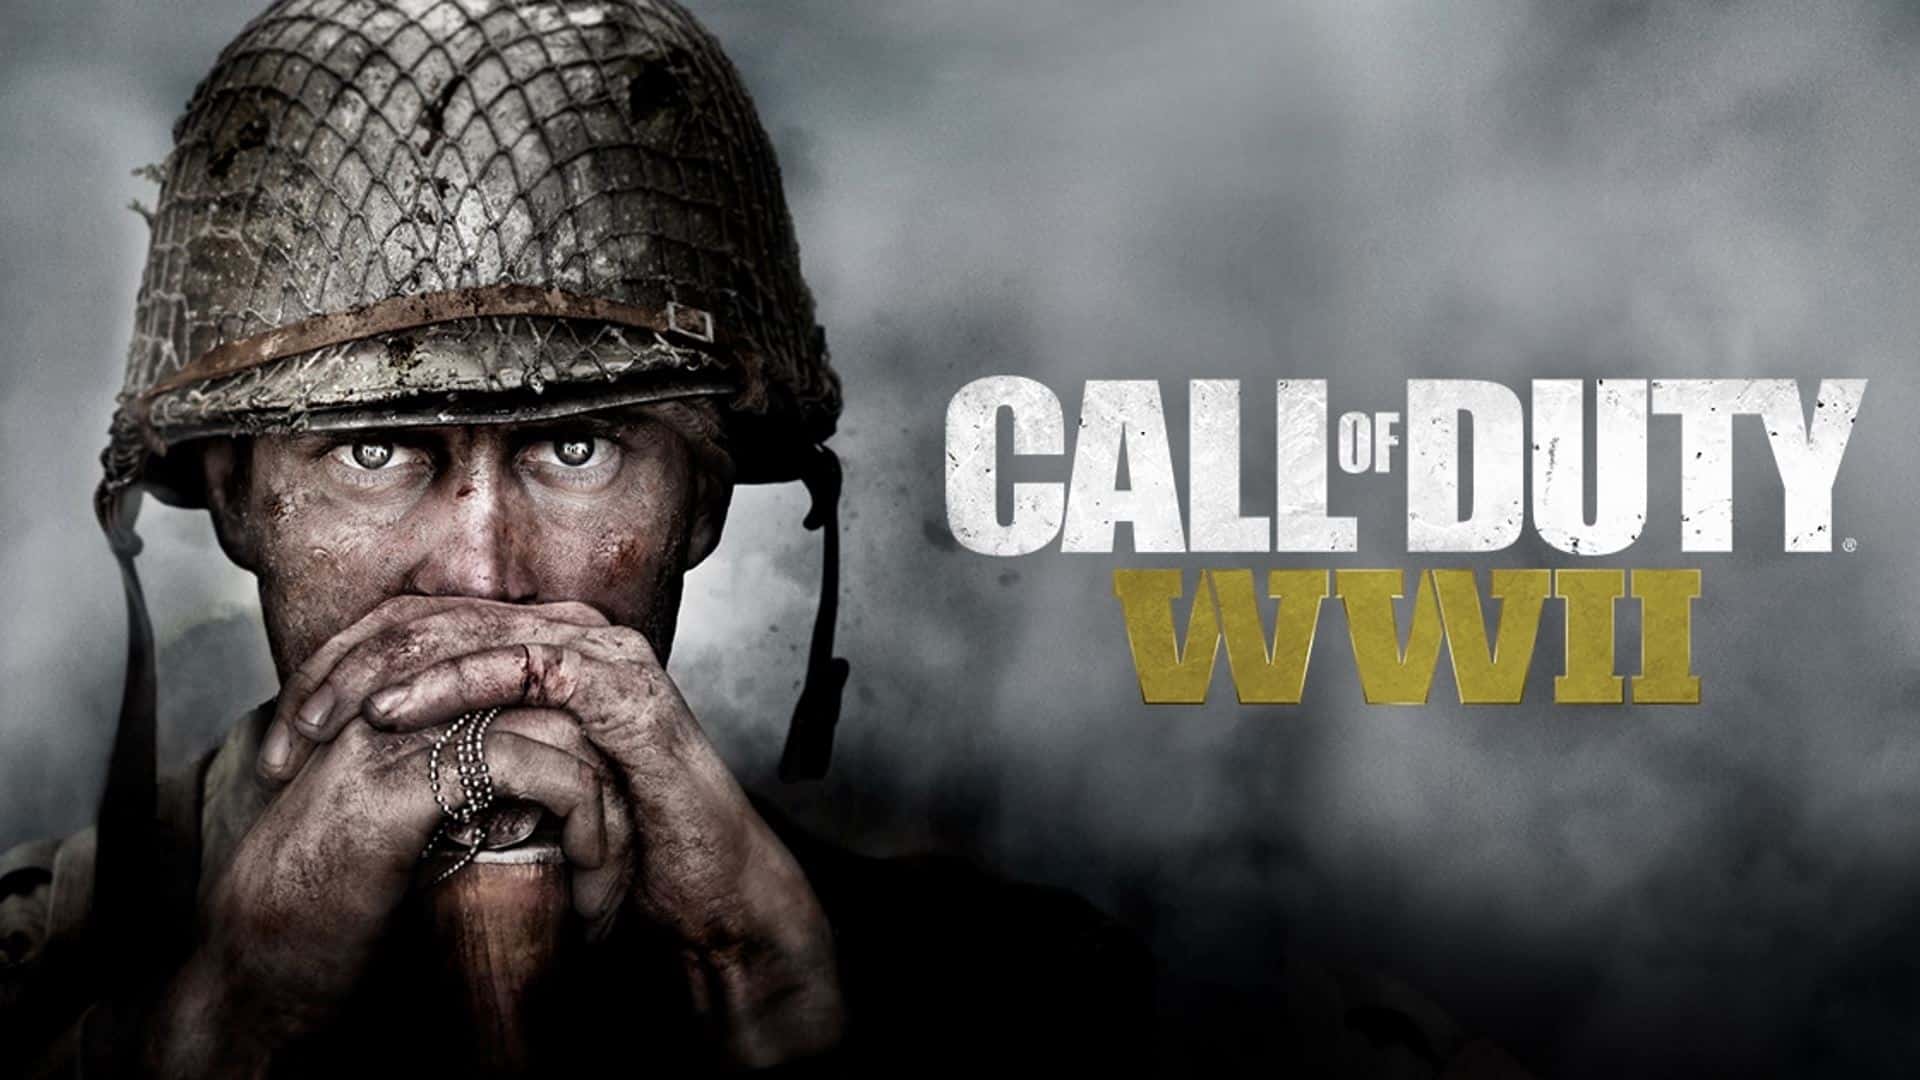 Meilleures ventes de jeux PS4 - Call of Duty WWII